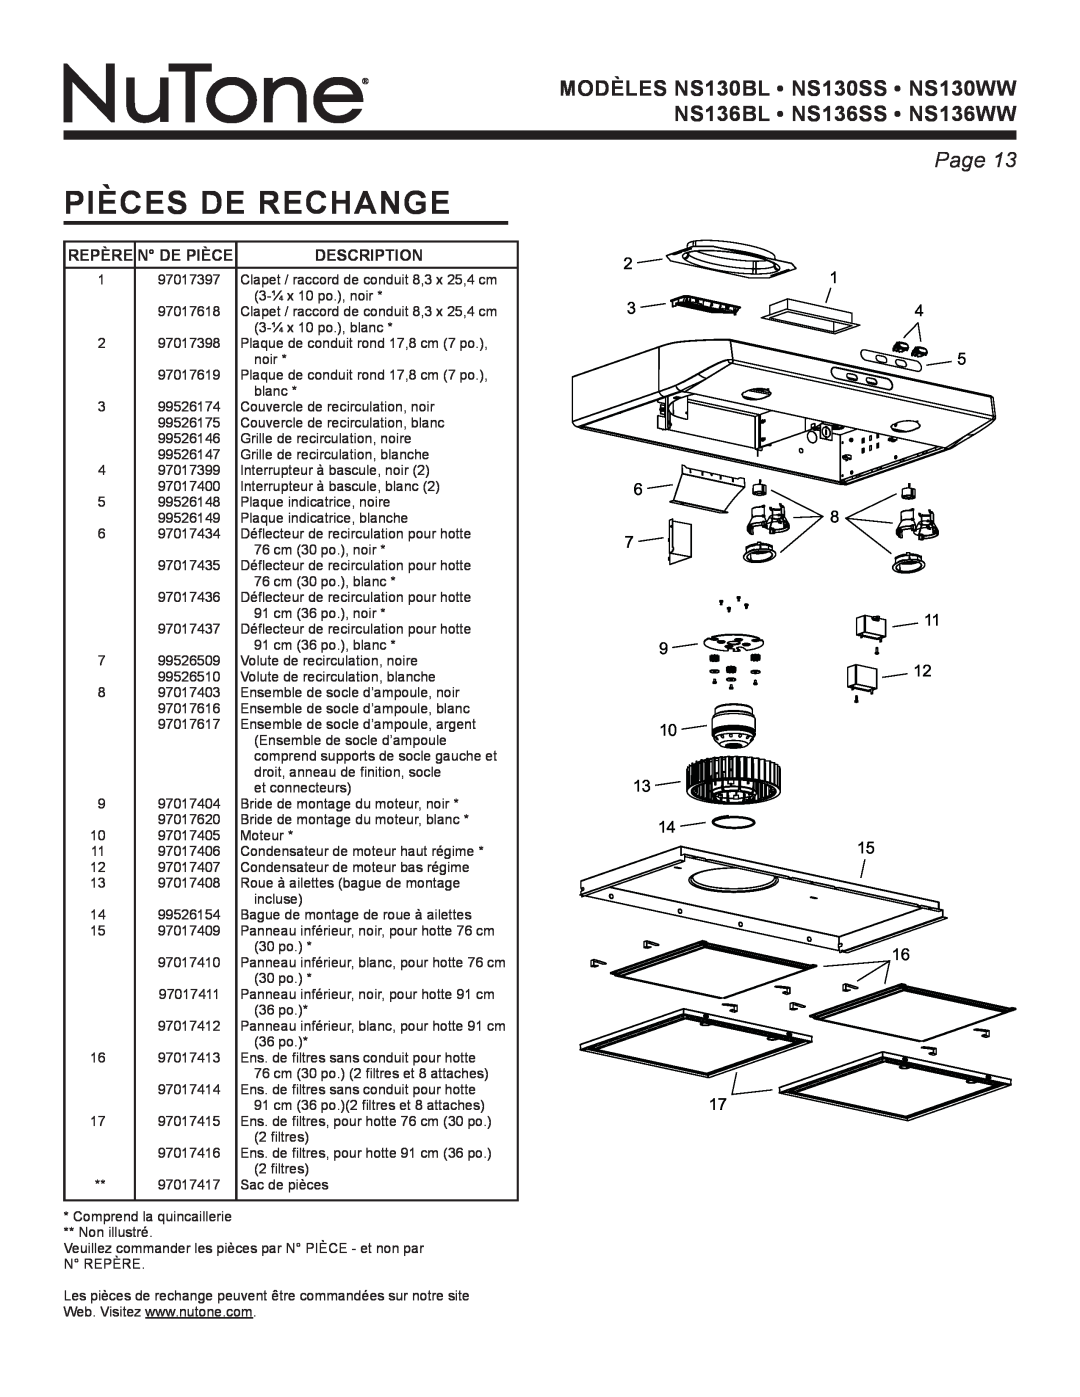 NuTone NS Series manual Pièces De Rechange, Repère N De Pièce, Description, Page 